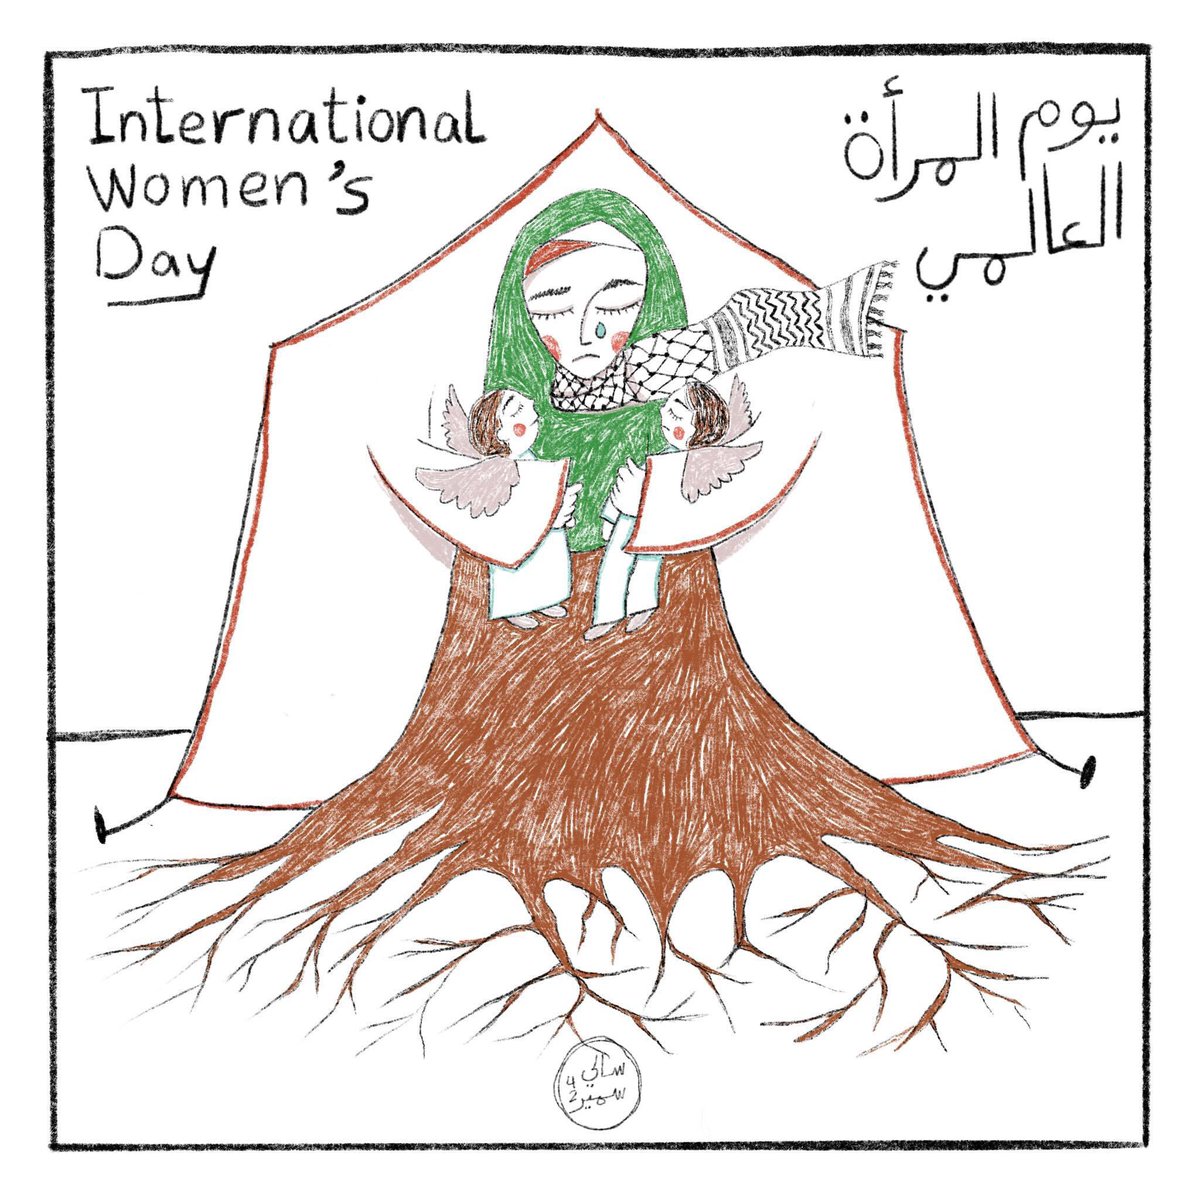 #InternationalWomensDay #يوم_المرأة_العالمي #palastine #فلسطين #غزة #gaza #womenofpalestine ❤️😔